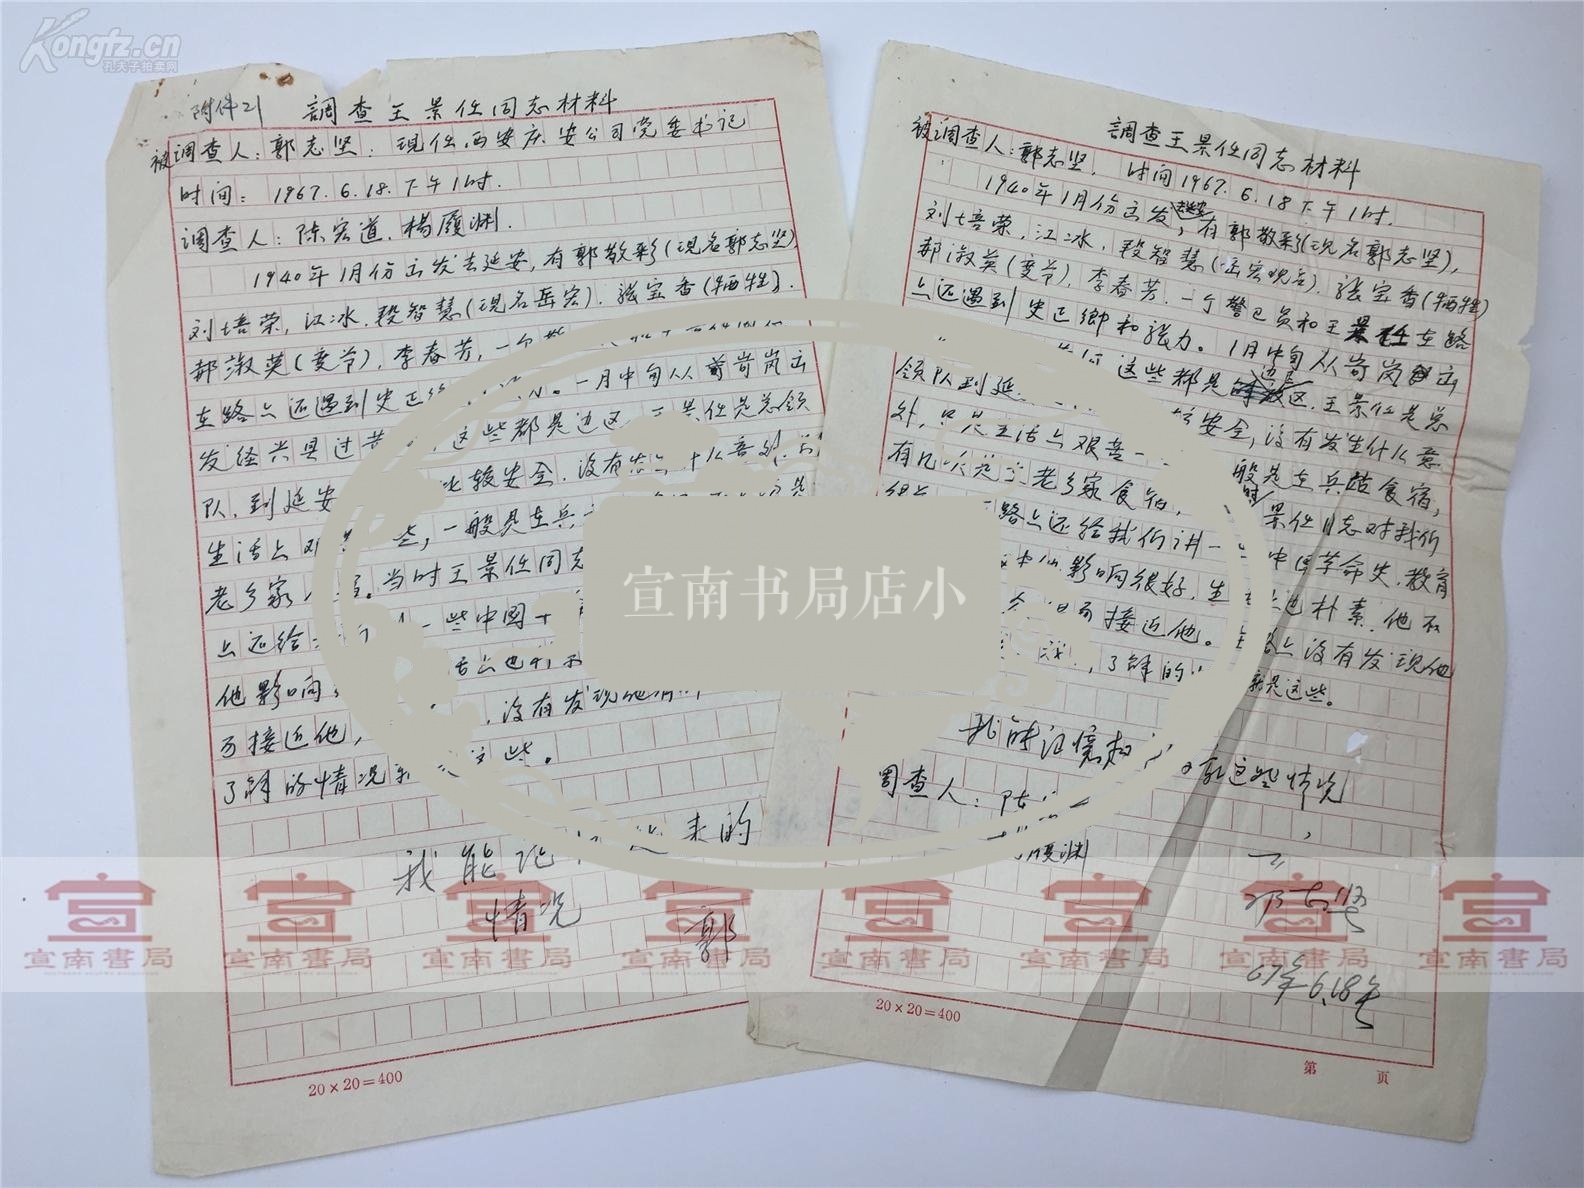 左联作家)旧藏:郭志坚、陈宏道文革时期